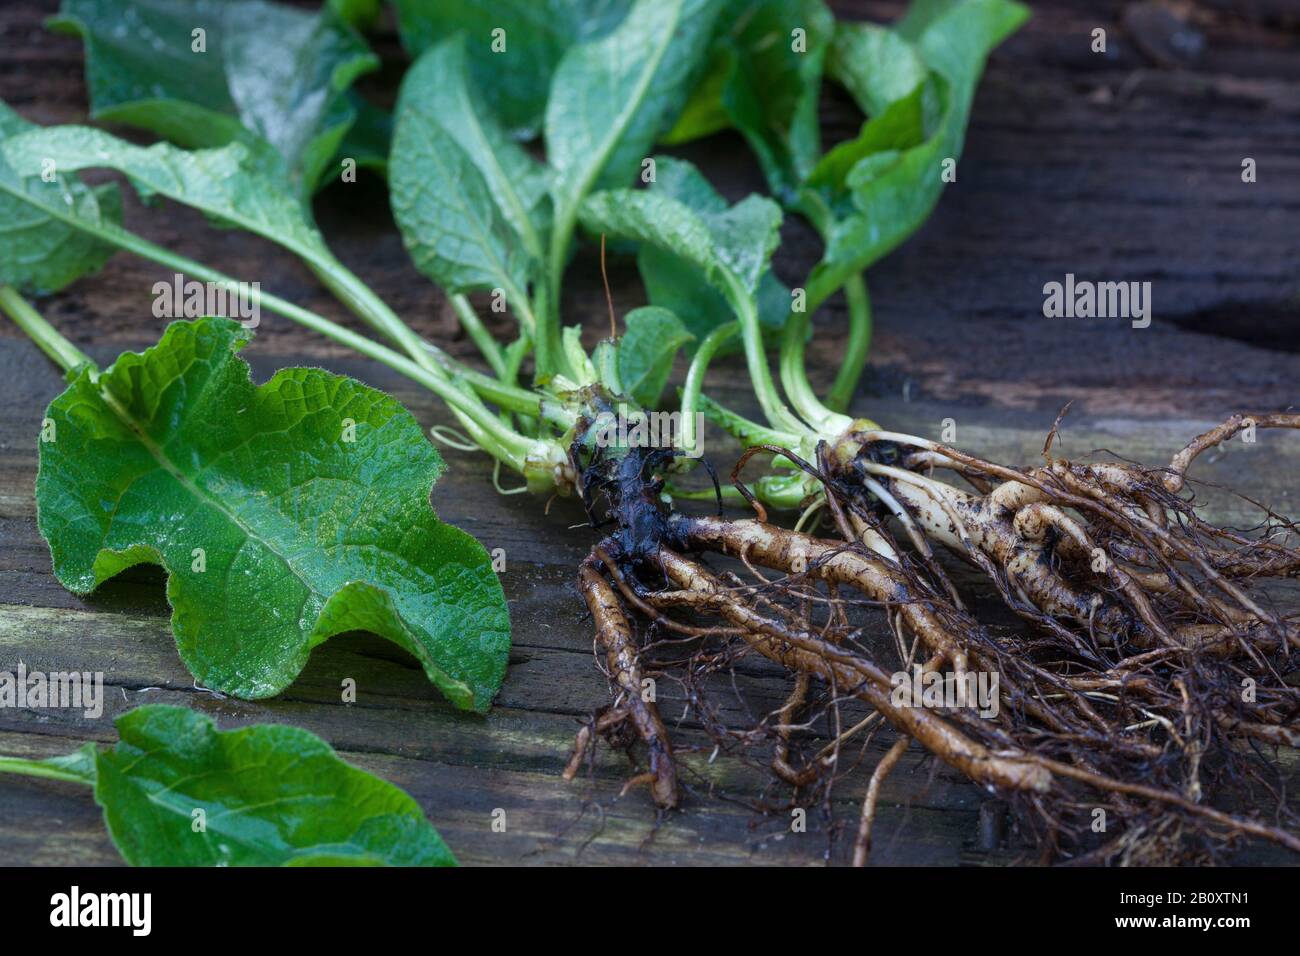 Comfrey común (Symphytum officinale), raíces recolectadas, Alemania Foto de stock